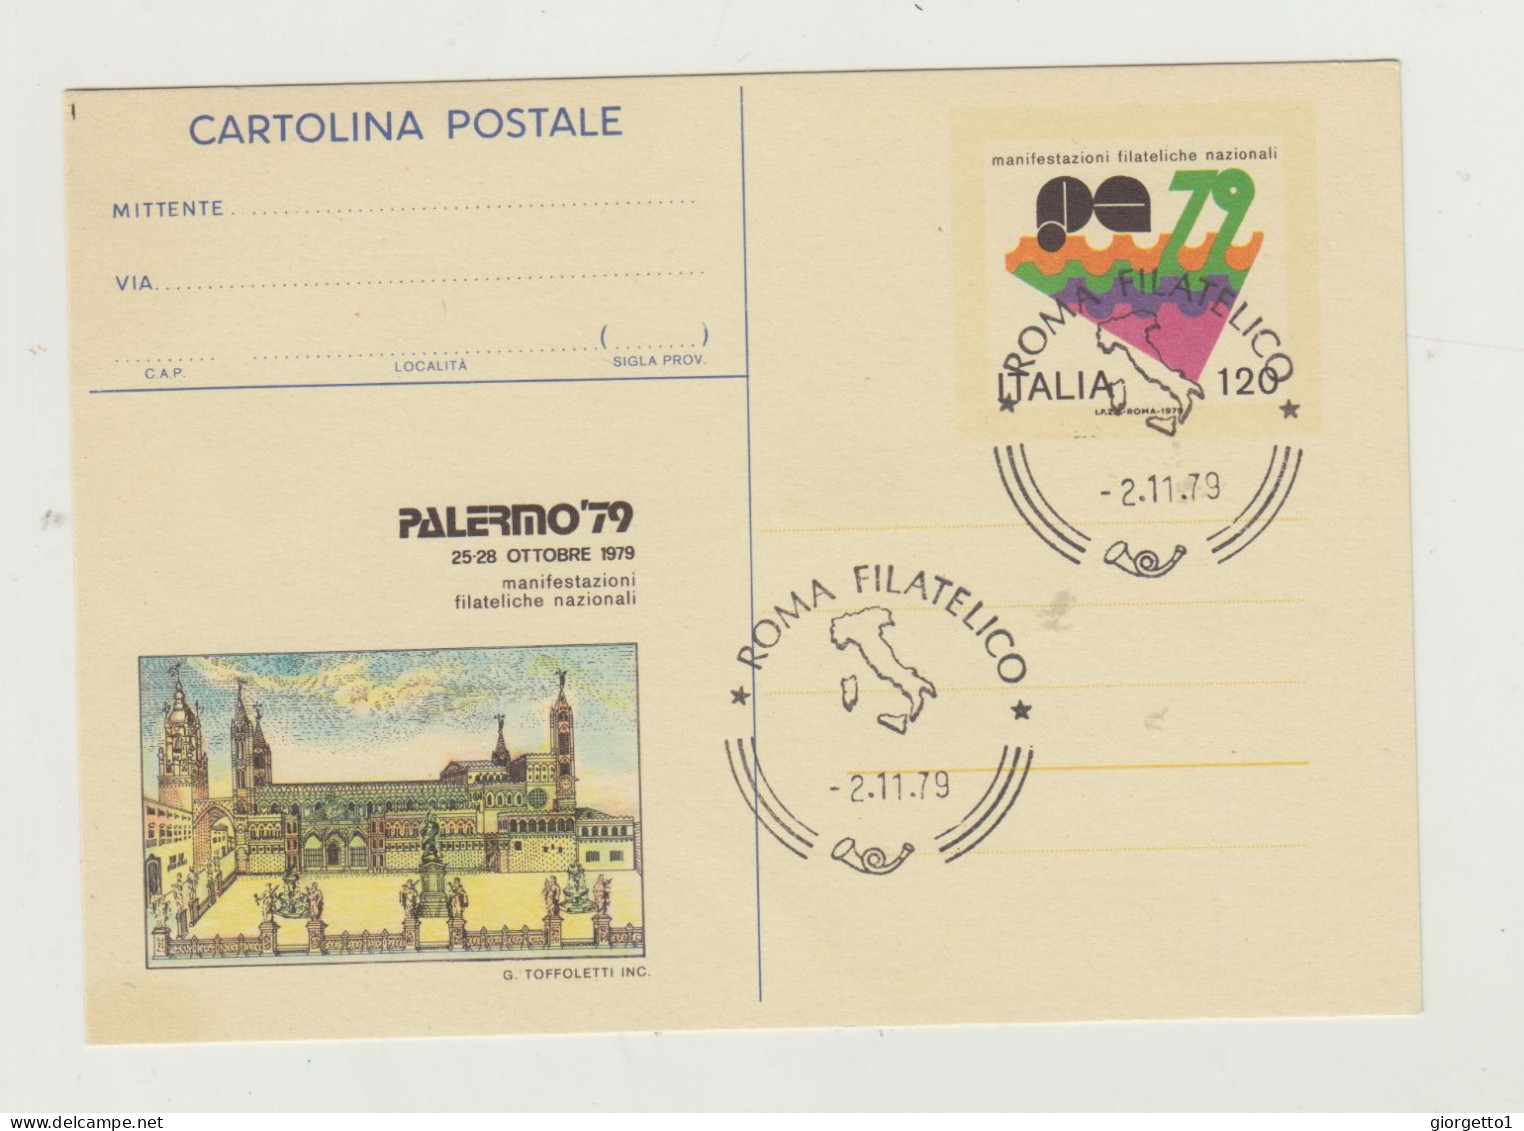 CARTOLINA POSTALE MANIFESTAZIONI FILATELICHE POSTALI - PALERMO 79 - ANNULLO ROMA FILATELICO 2-11-1979 - Marcophilie